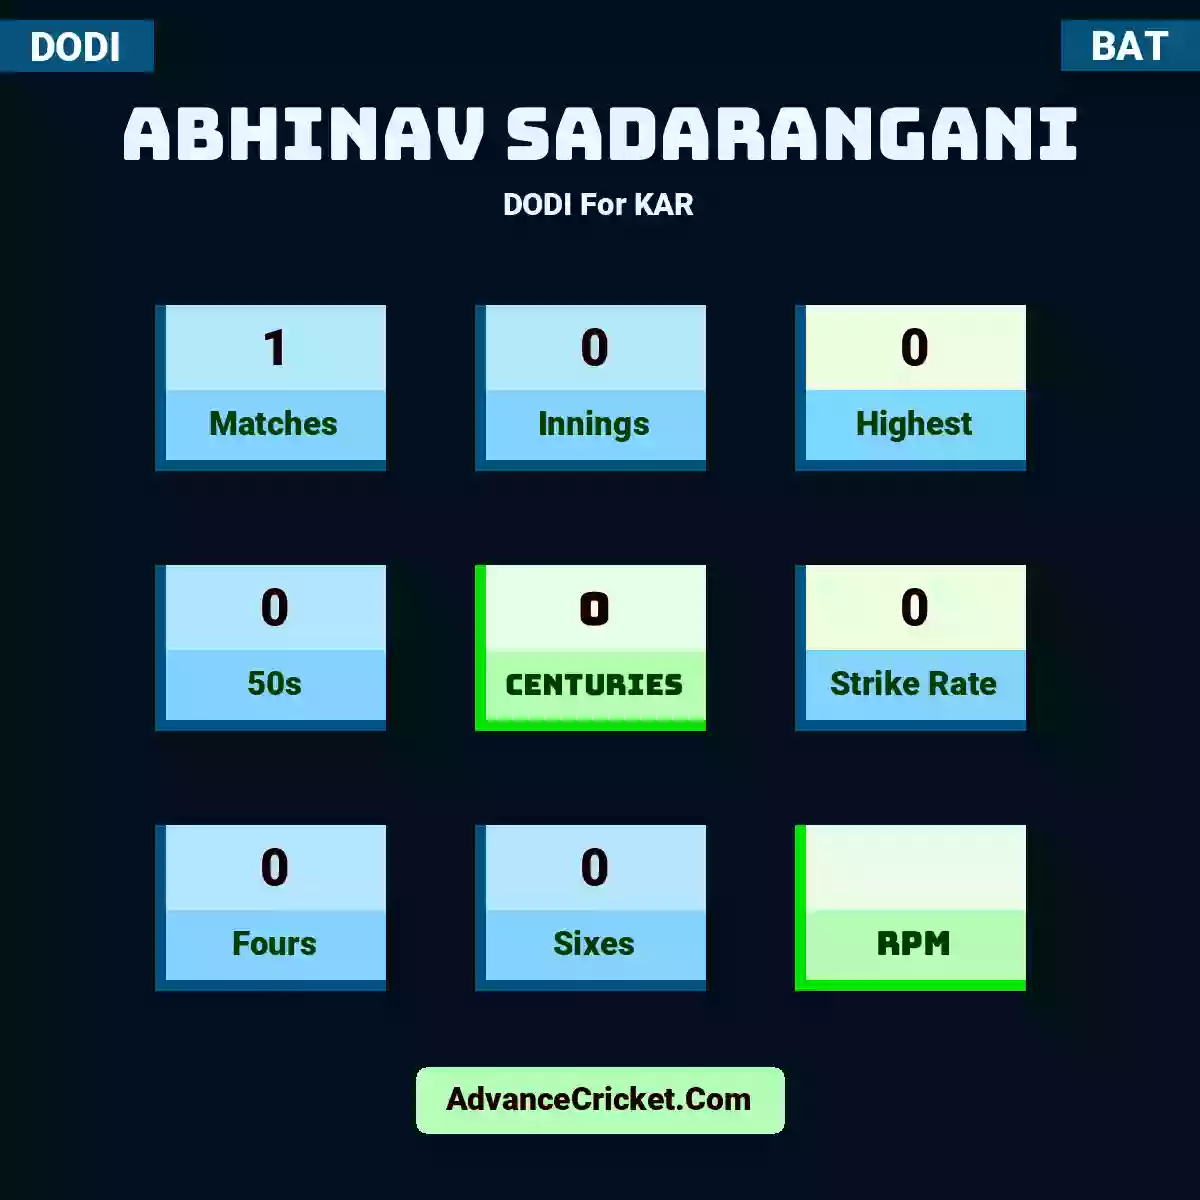 Abhinav Sadarangani DODI  For KAR, Abhinav Sadarangani played 1 matches, scored 0 runs as highest, 0 half-centuries, and 0 centuries, with a strike rate of 0. A.Sadarangani hit 0 fours and 0 sixes.